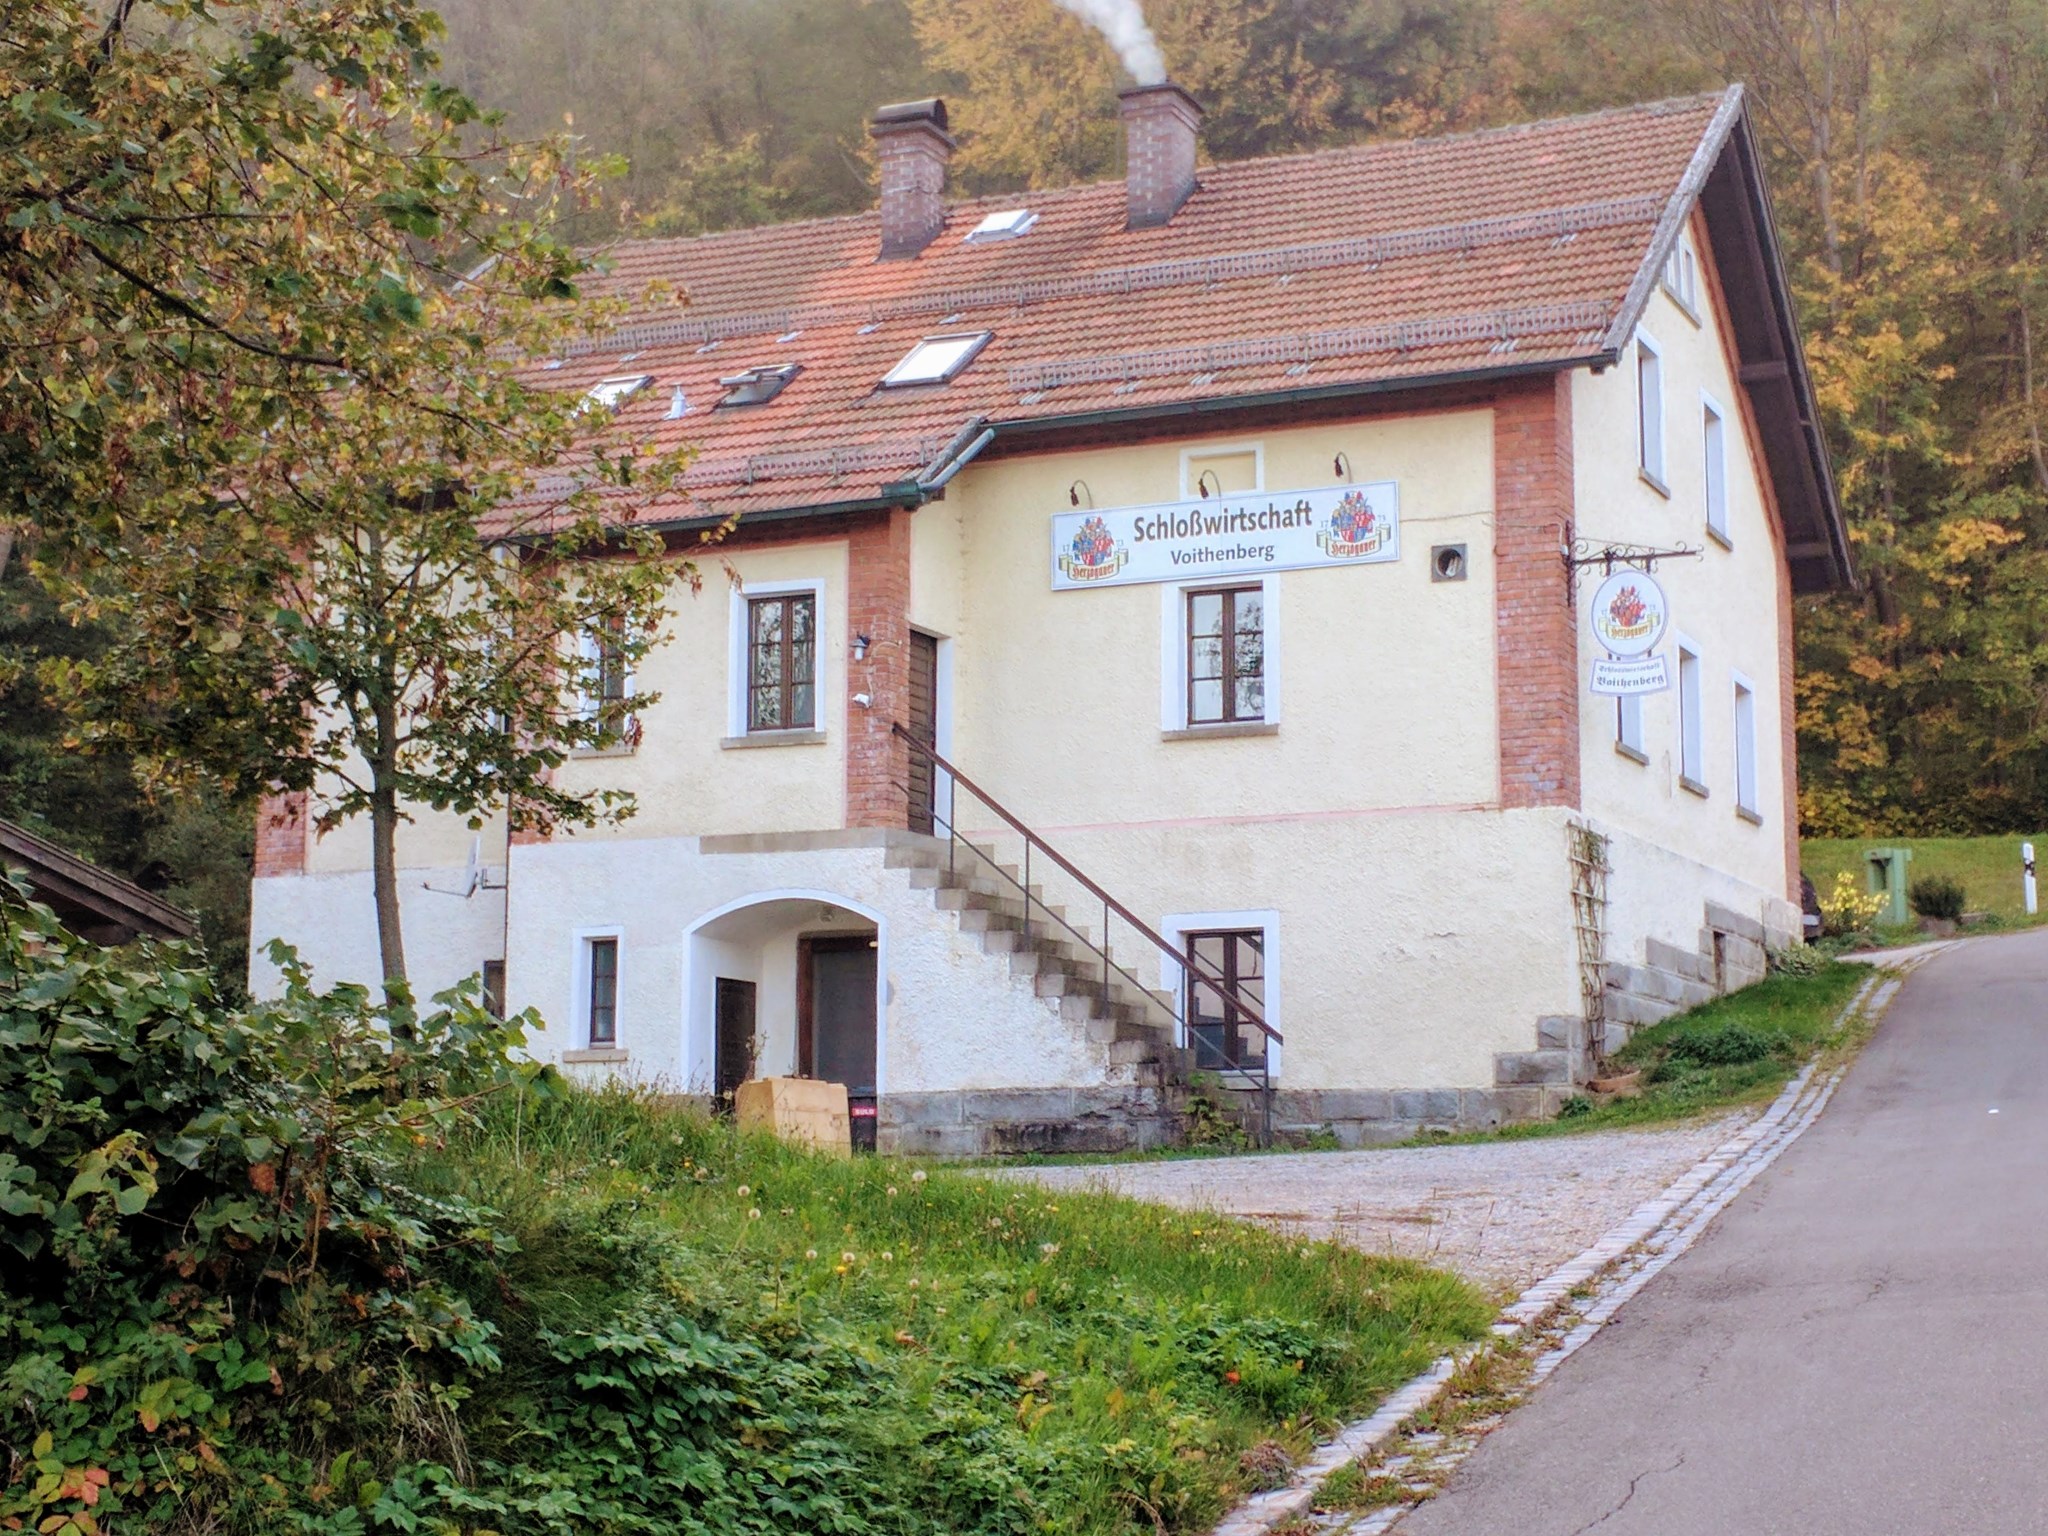 Schlosswirtschaft Voithenberg